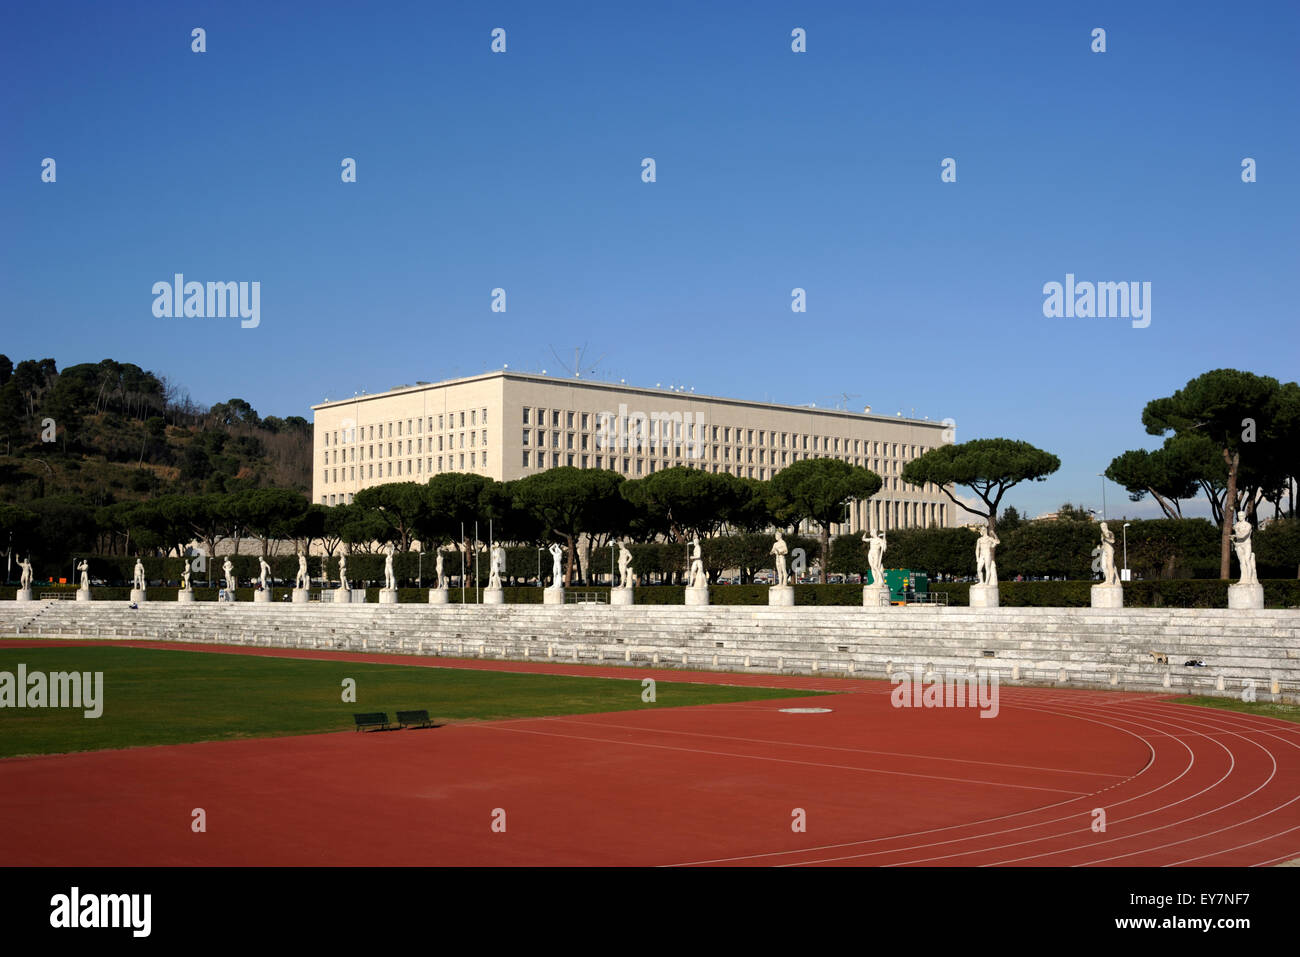 Italie, Rome, Foro Italico, Stadio dei Marmi et Farnesina (Ministère des Affaires étrangères), architecture fasciste Banque D'Images